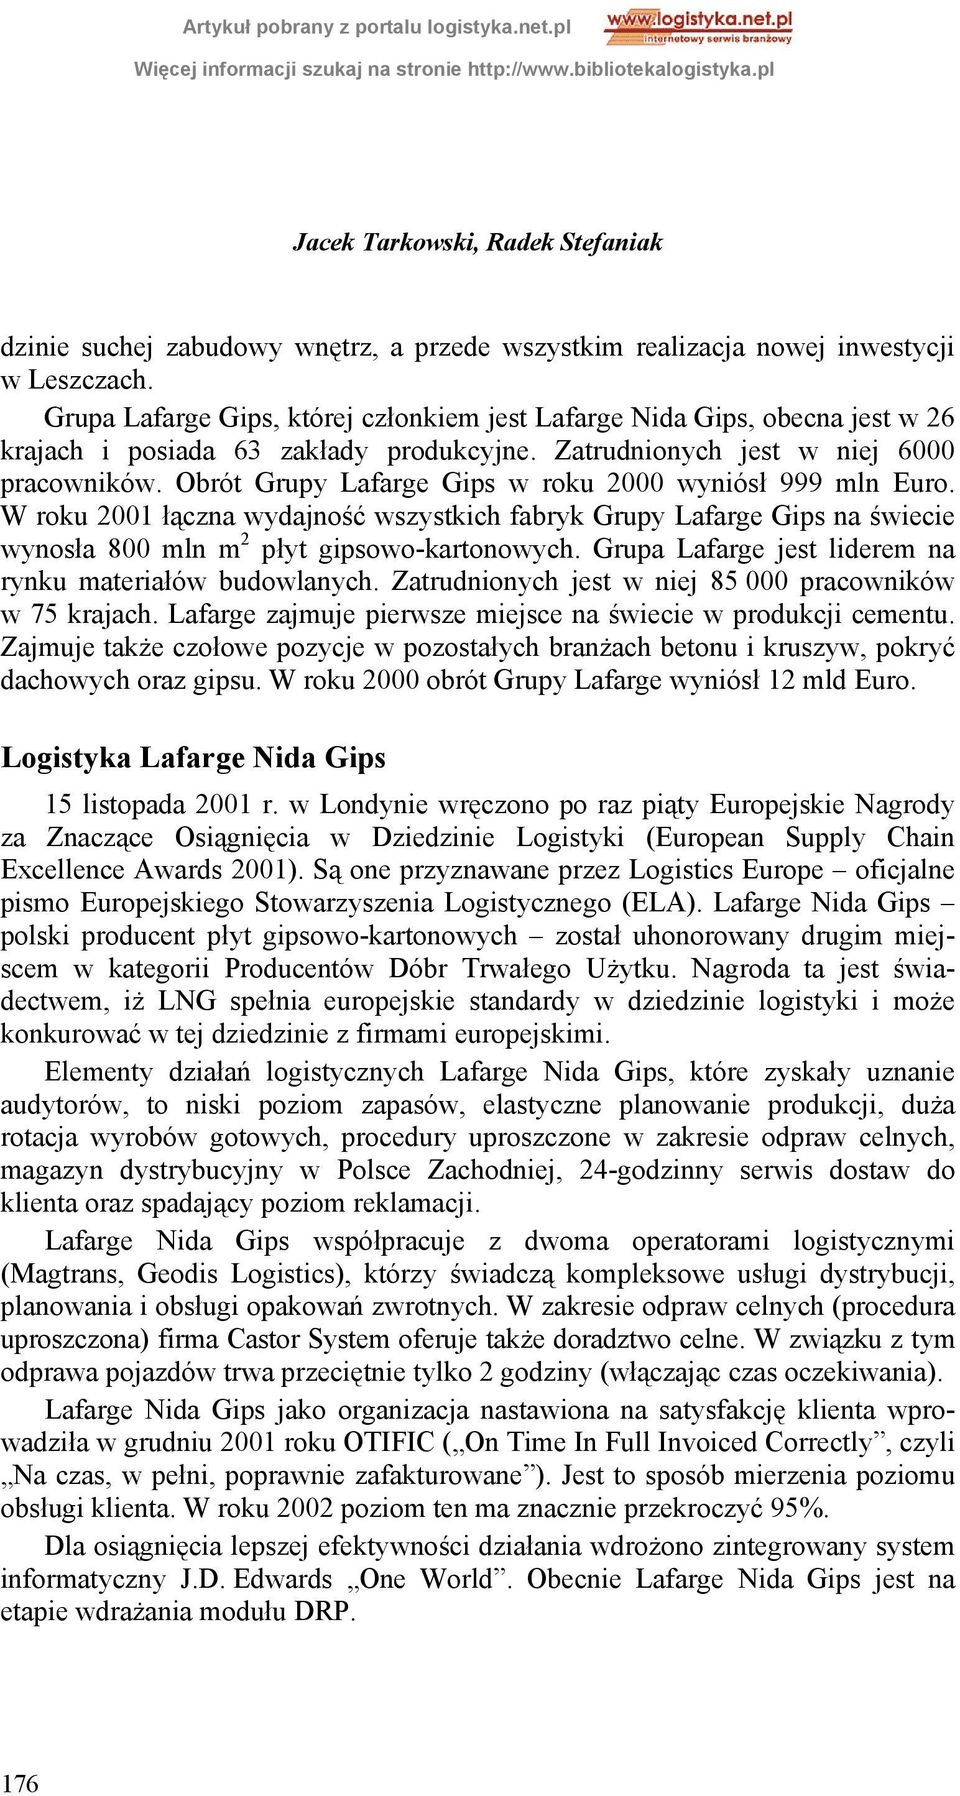 Obrót Grupy Lafarge Gips w roku 2000 wyniósł 999 mln Euro. W roku 2001 łączna wydajność wszystkich fabryk Grupy Lafarge Gips na świecie wynosła 800 mln m 2 płyt gipsowo-kartonowych.